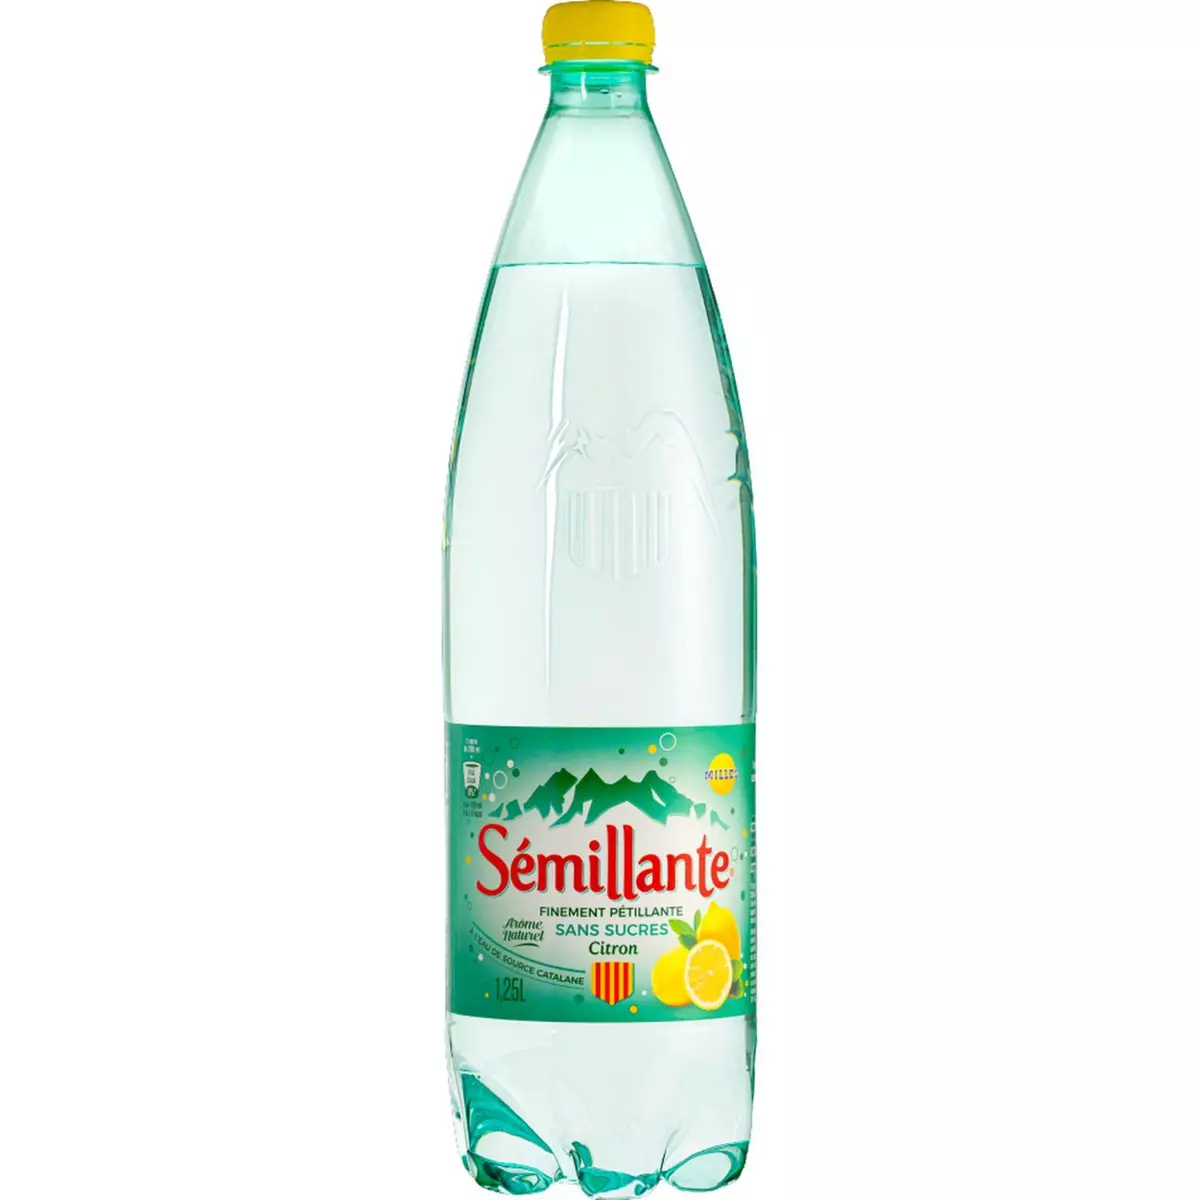 MILLES Sémillante eau finement pétillante sans sucres au citron 1.5l